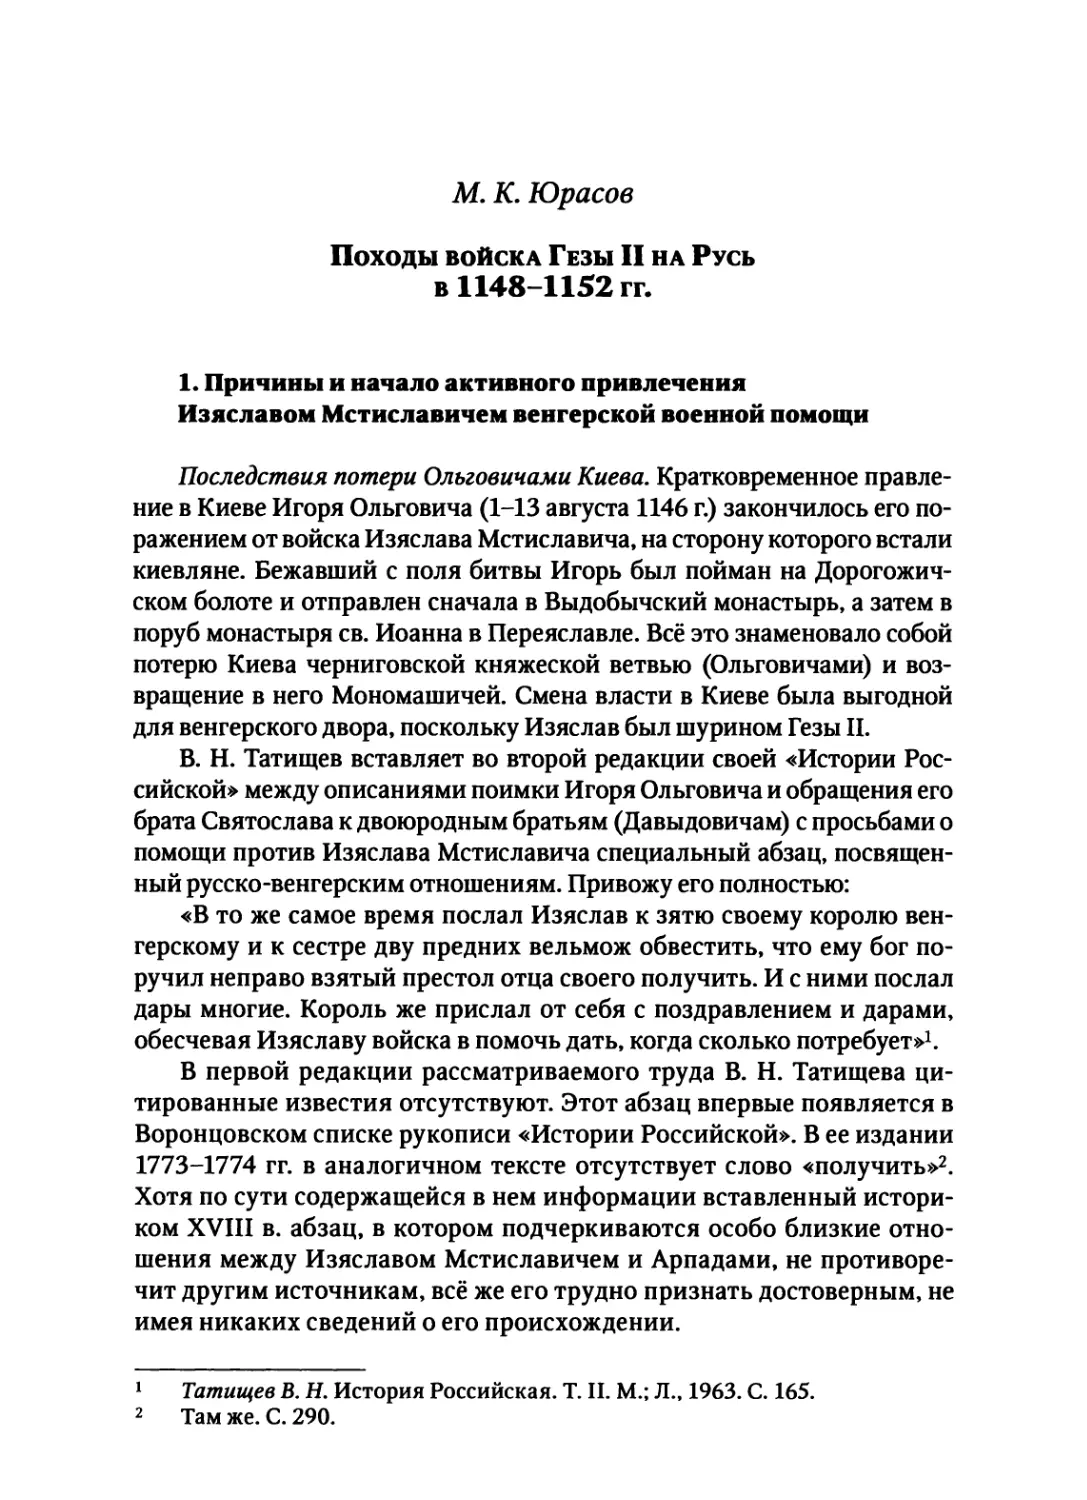 Юрасов М. К. Походы войска Гезы II на Русь в 1148-1152 гг